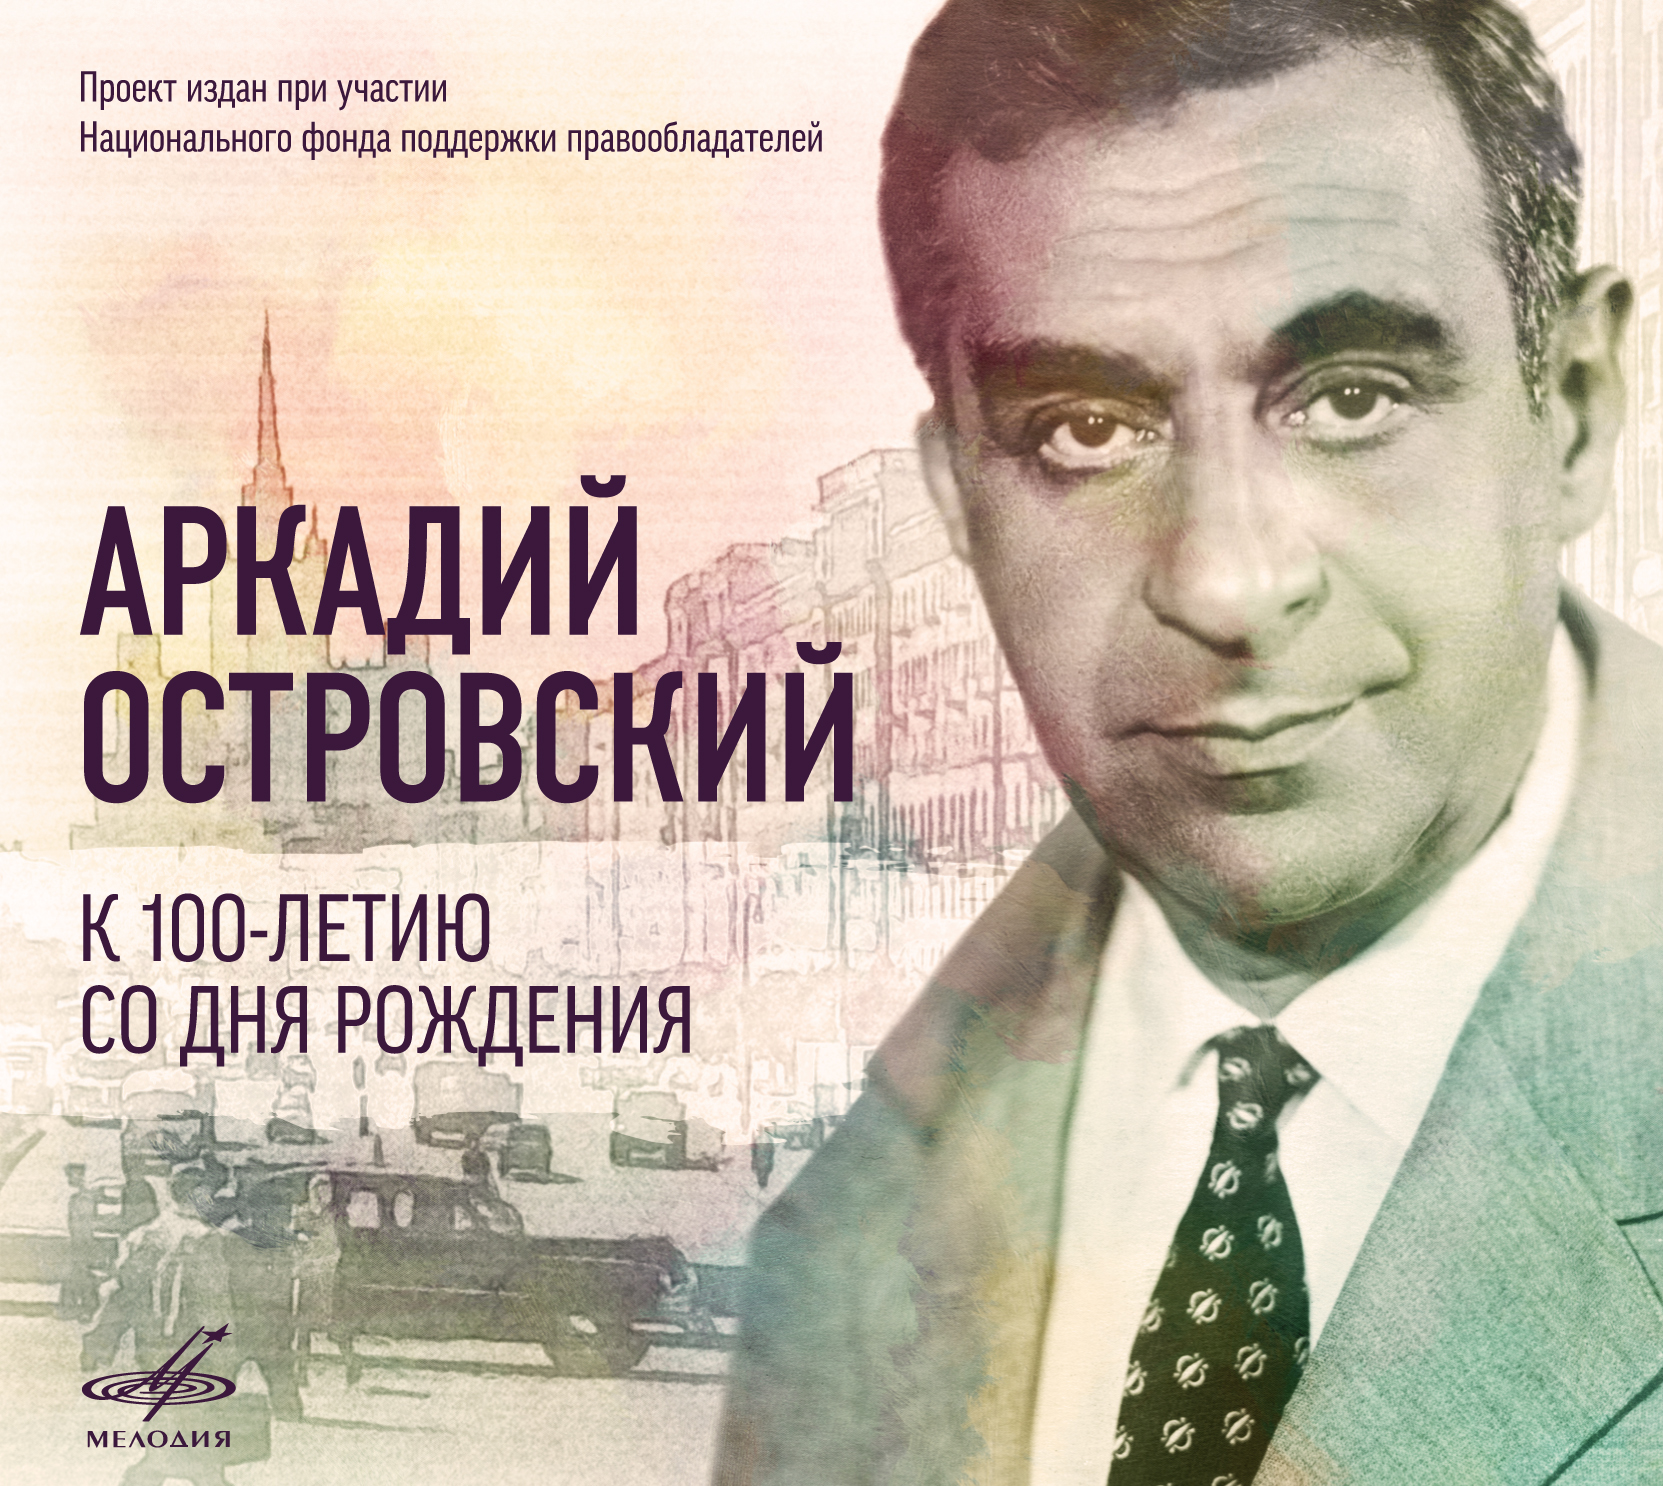 При содействии НФПП издан CD-сборник к 100-летию со дня рождения Аркадия Островского